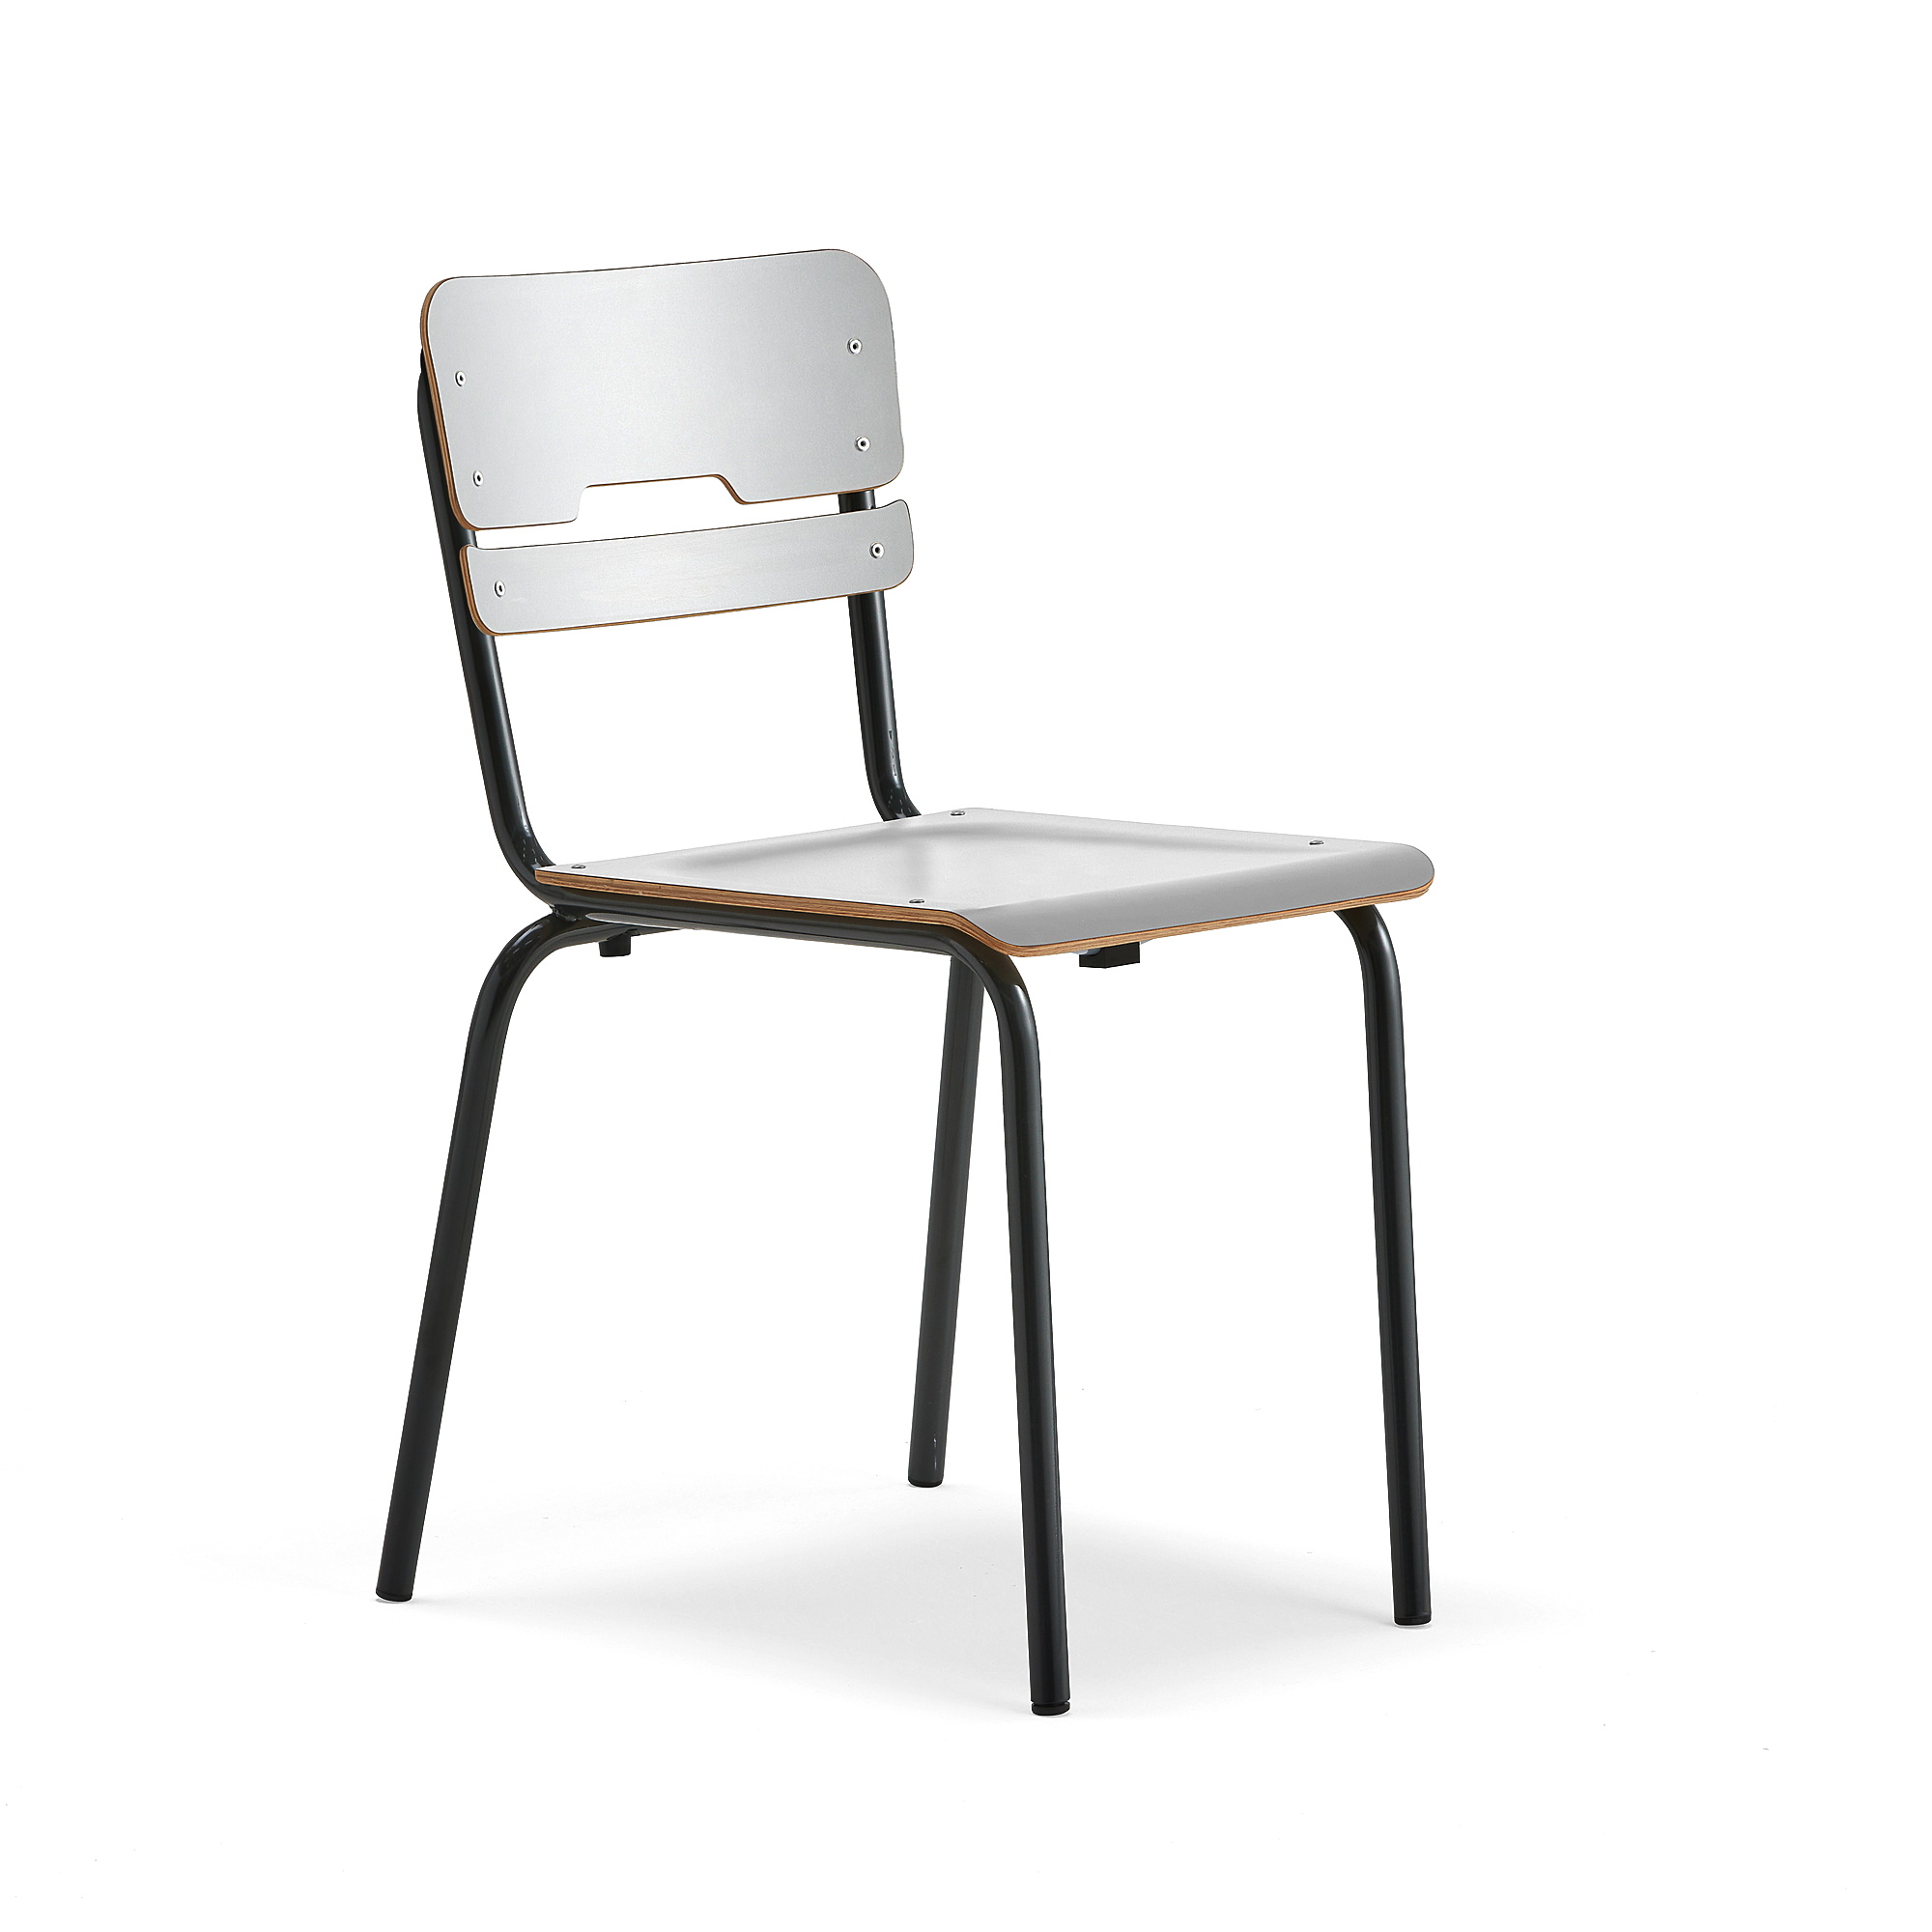 Levně Školní židle SCIENTIA, sedák 390x390 mm, výška 460 mm, antracitová/šedá